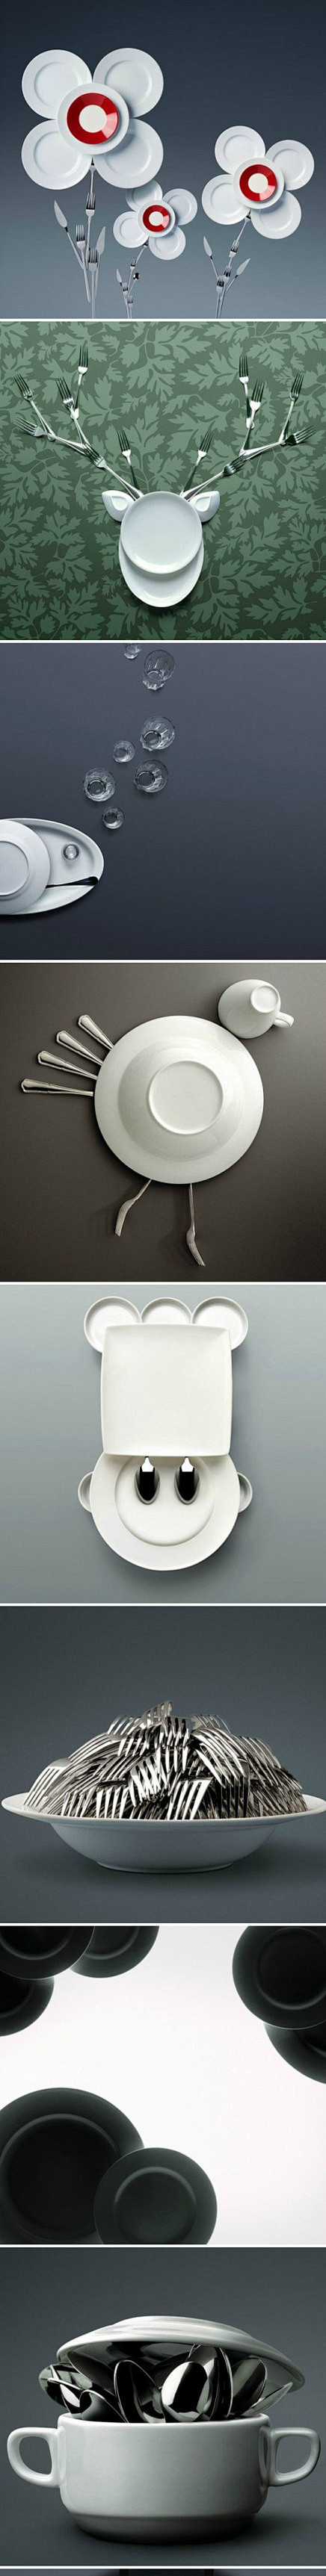 一组餐具的创意摄影广告。#创意# #经典...